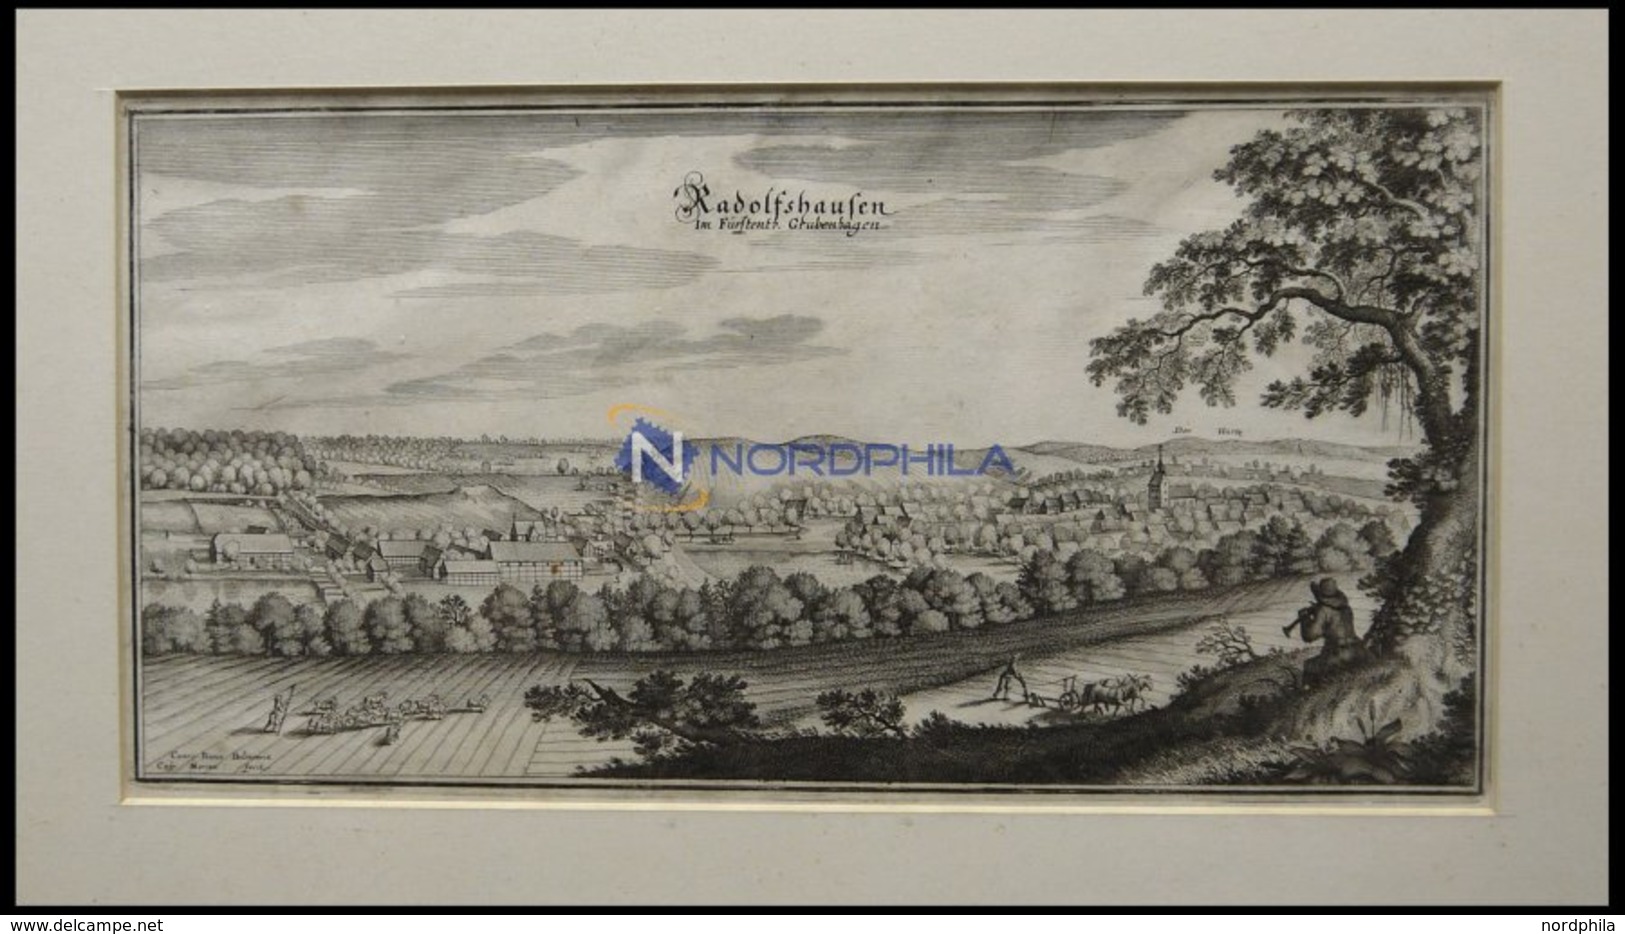 RADOLFSHAUSEN, Gesamtansicht, Kupferstich Von Merian Um 1645 - Litografía